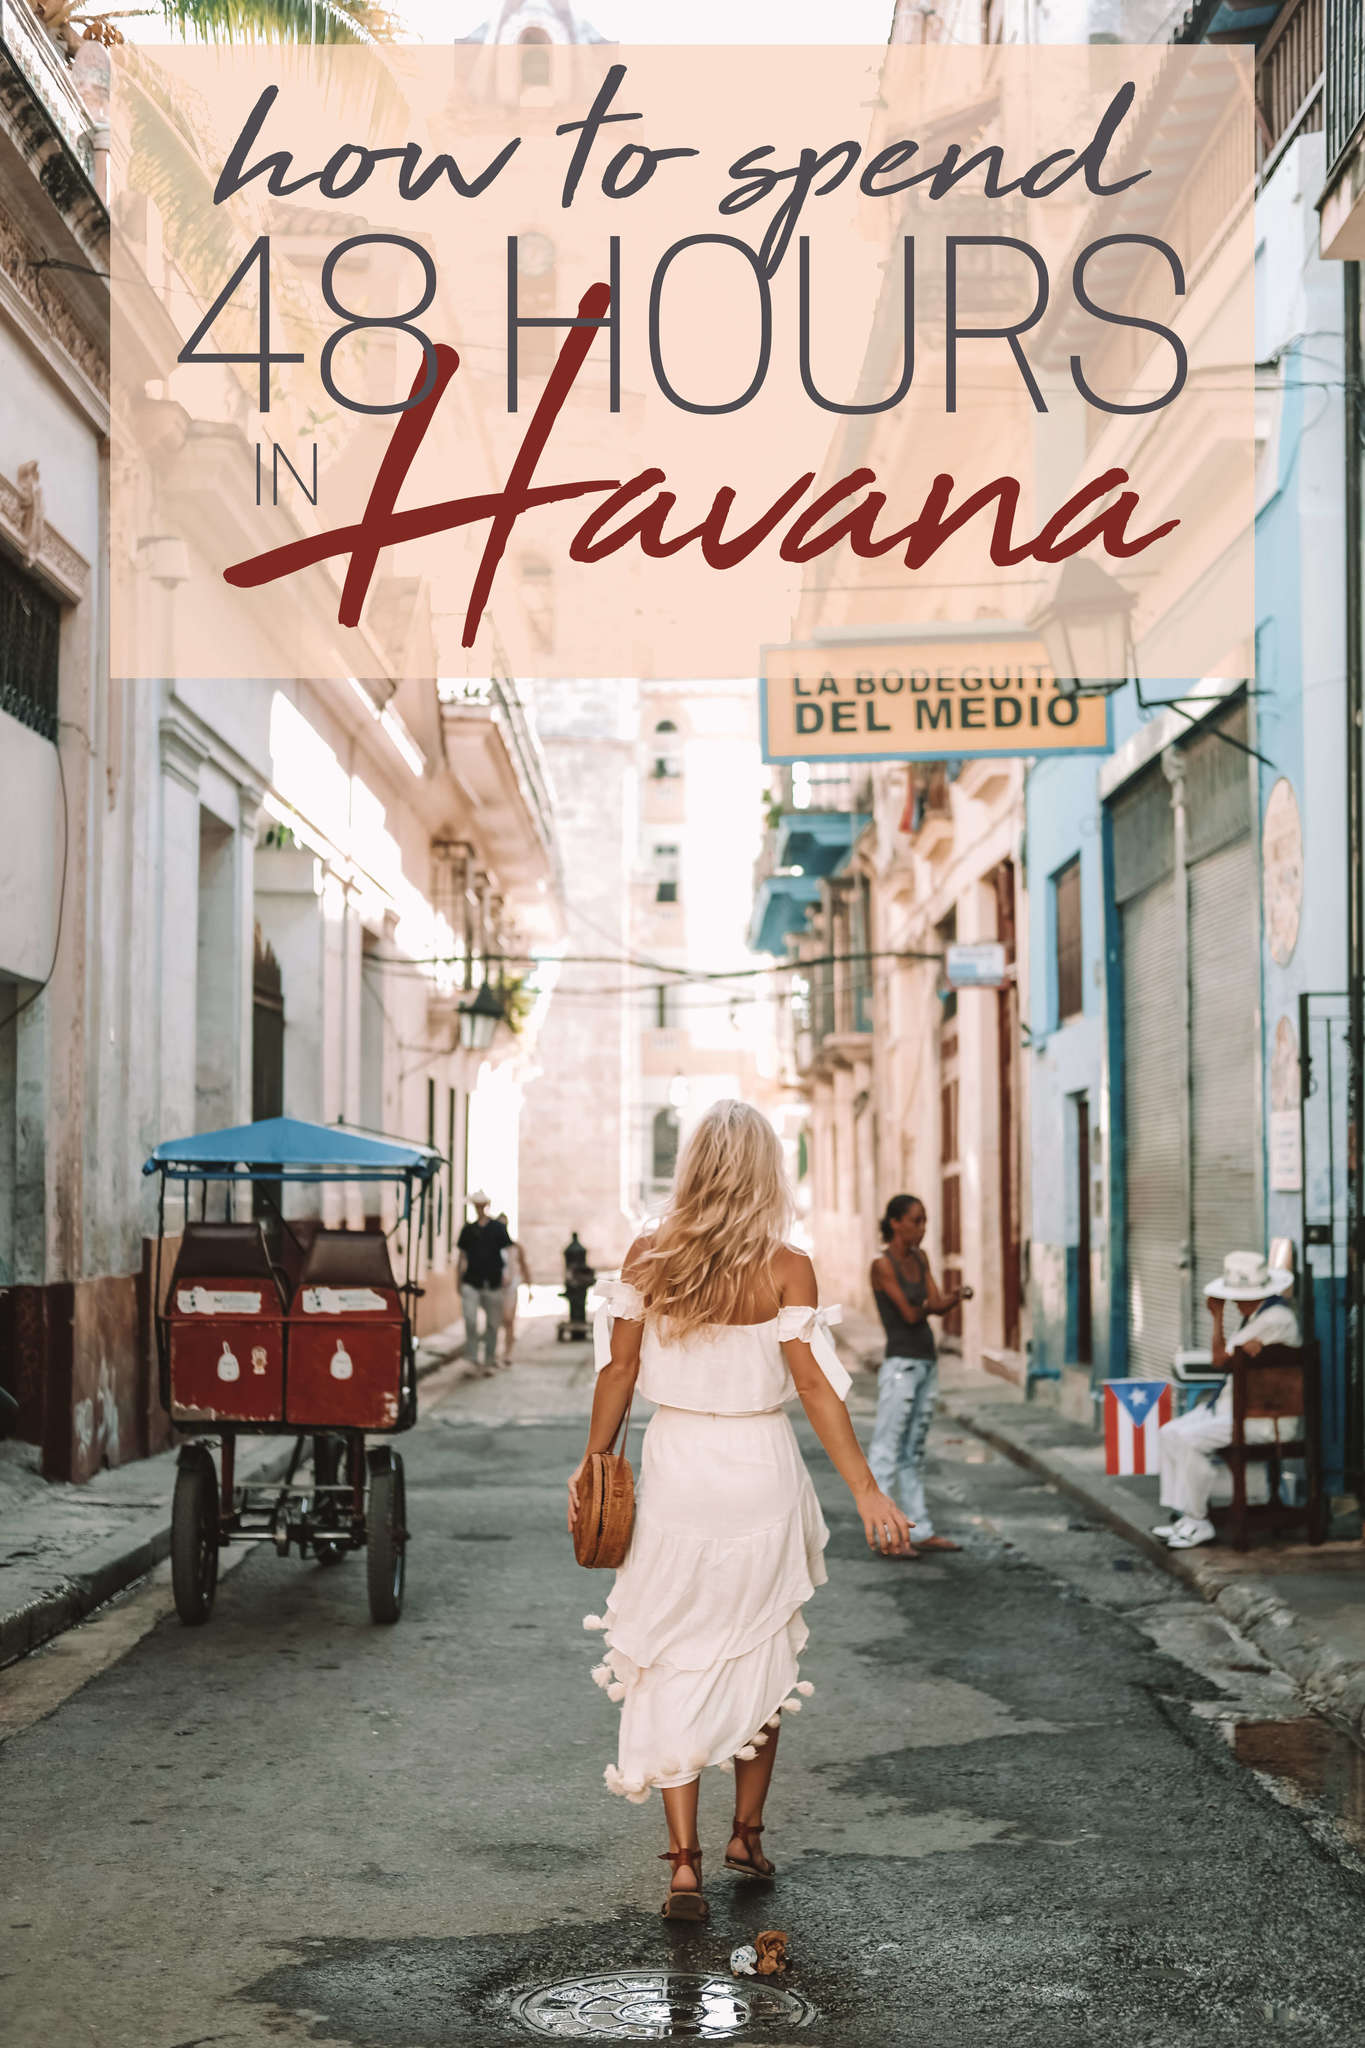 In Havana flirttipps Flirttipps Für